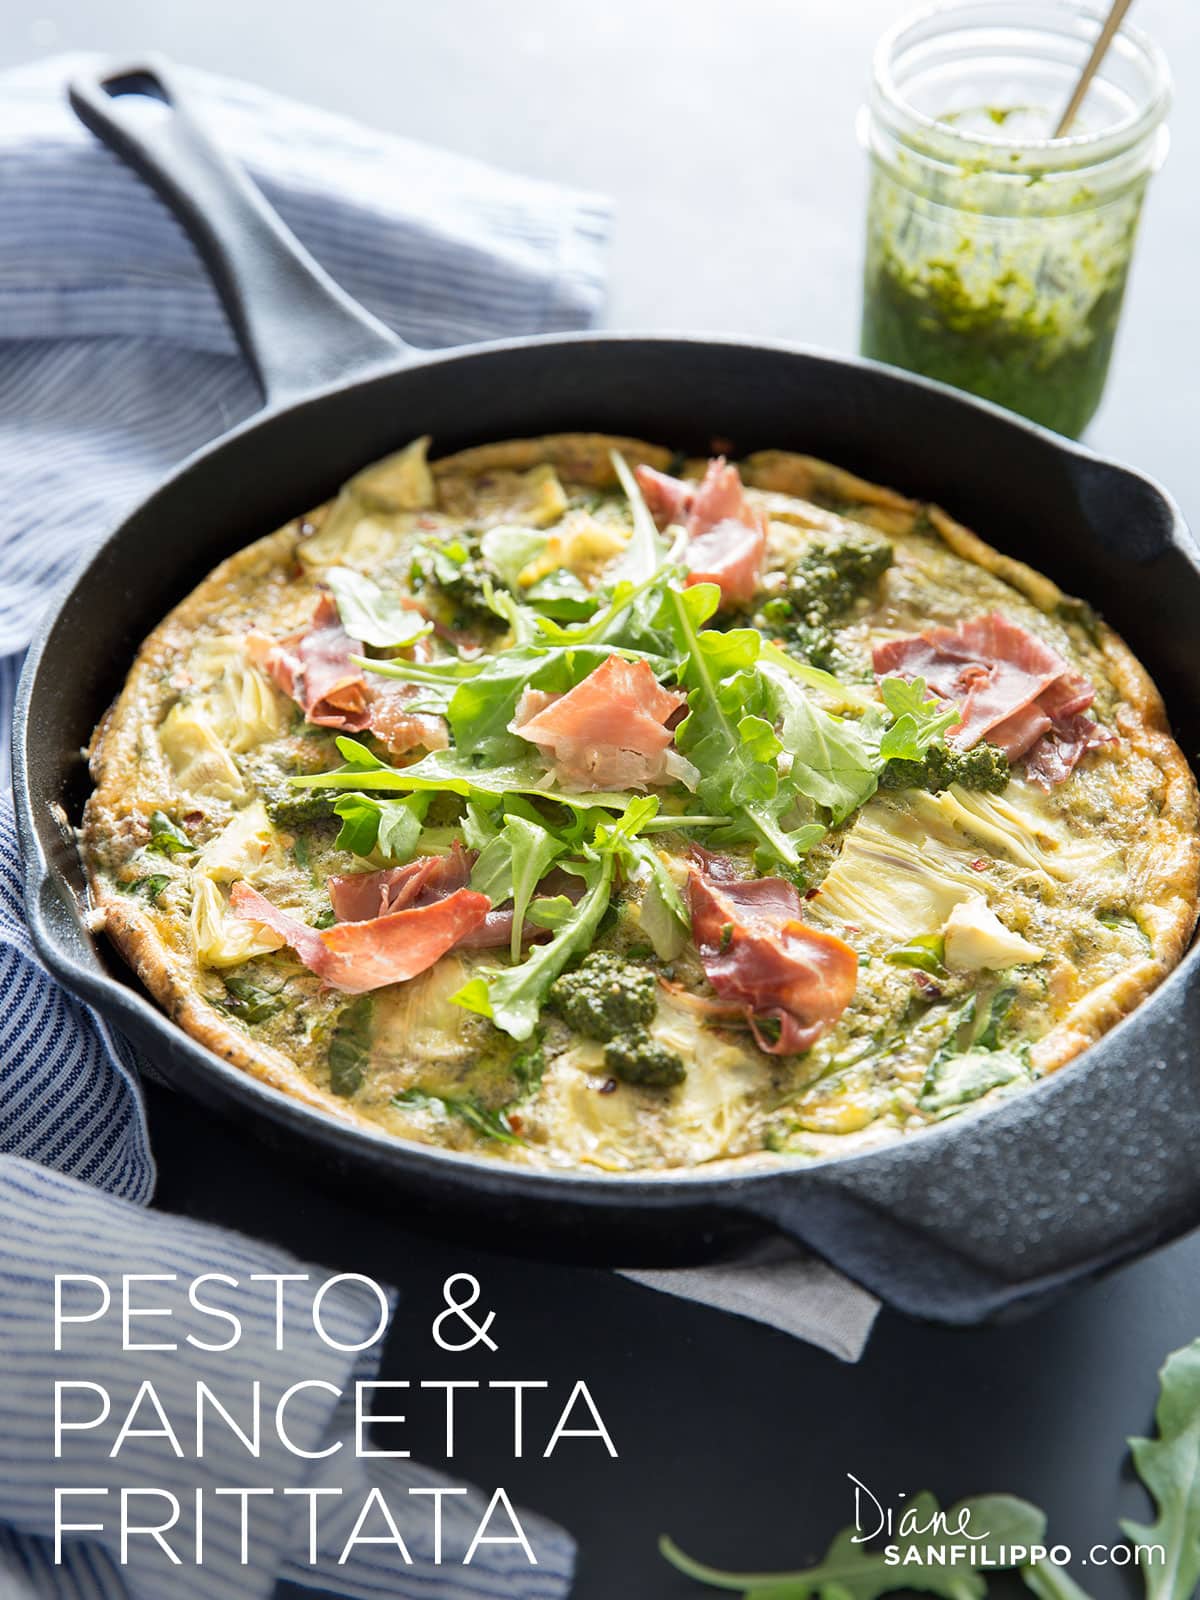 Pesto & Pancetta Frittata | Diane Sanfilippo